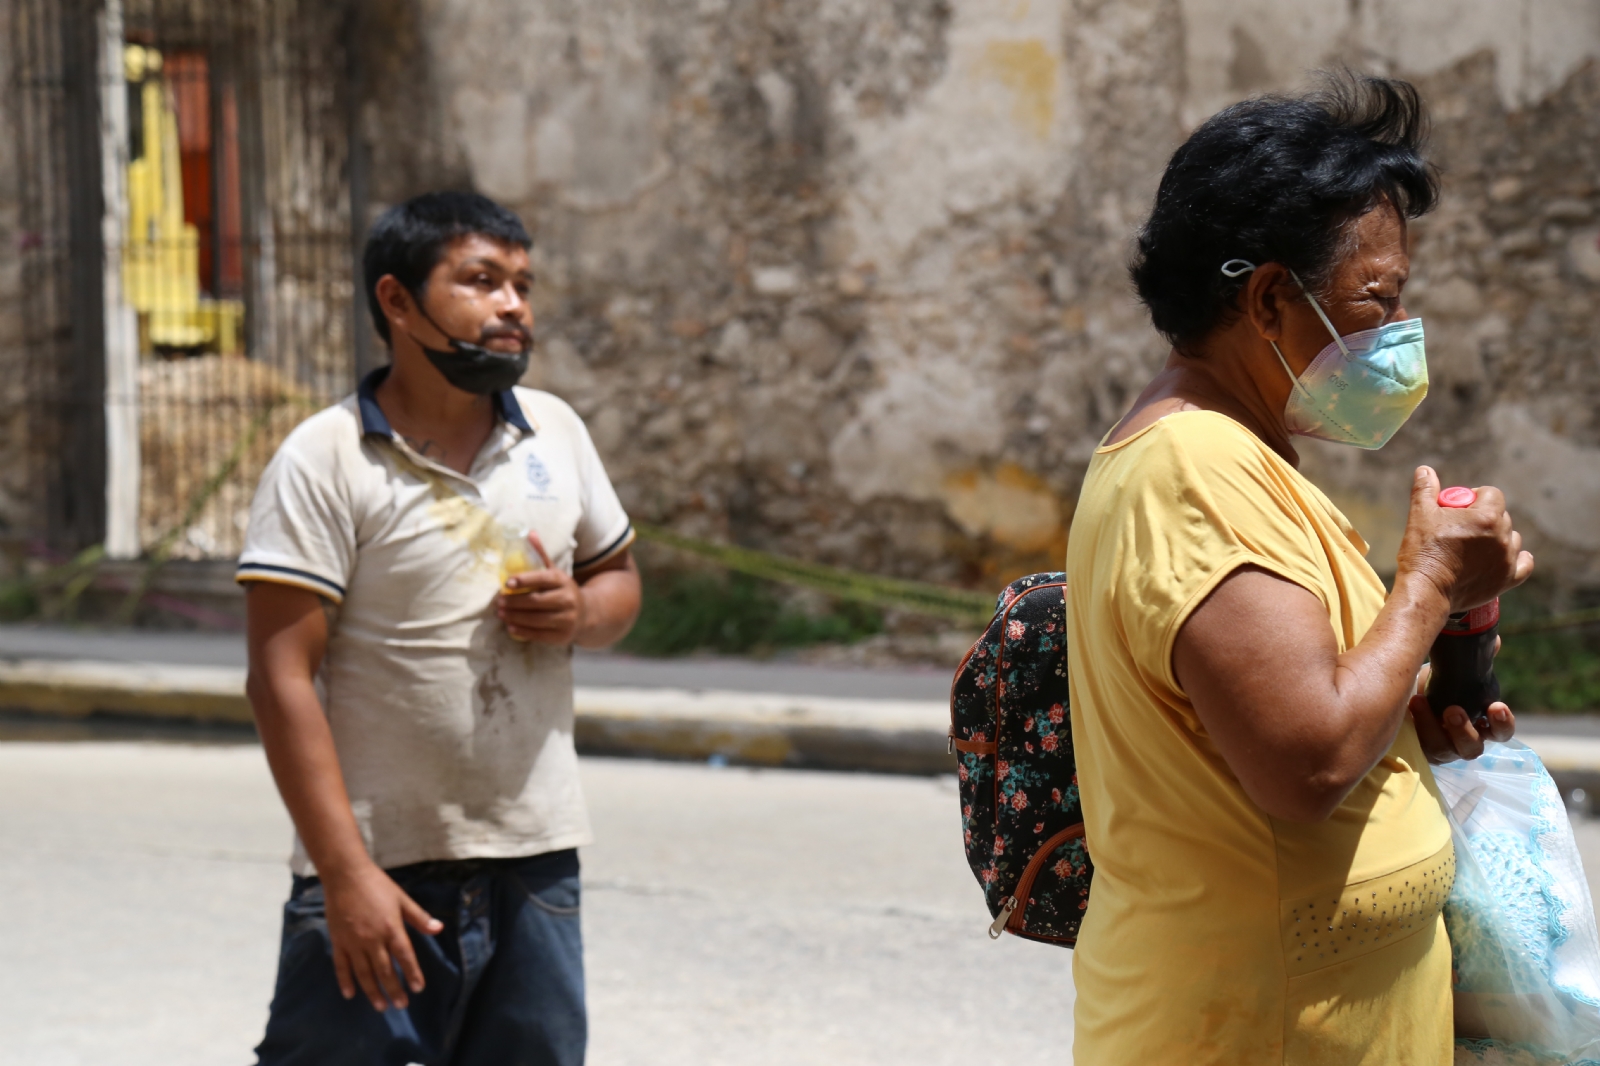 Península de Yucatán encabeza trastornos mentales en México